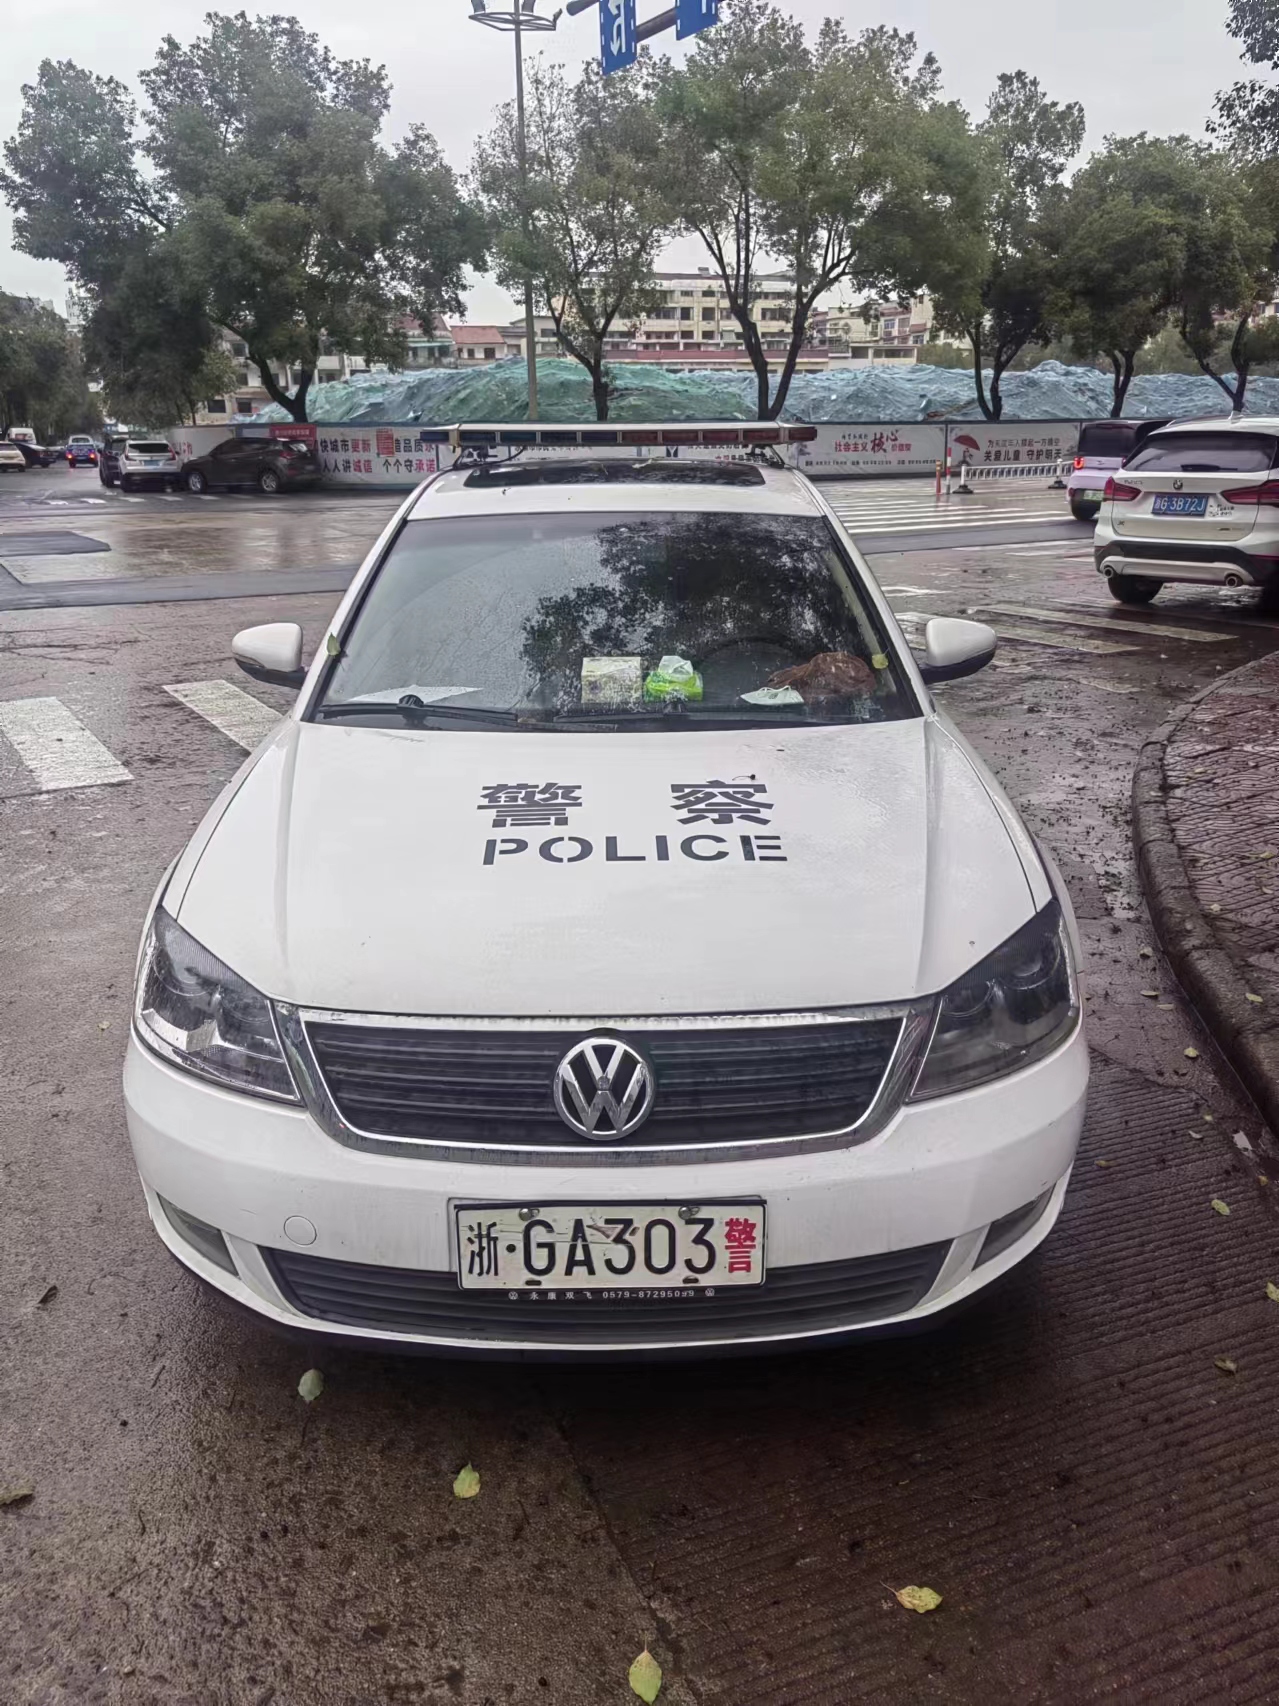 永康市人民法院报废车辆浙GA303警出售招标